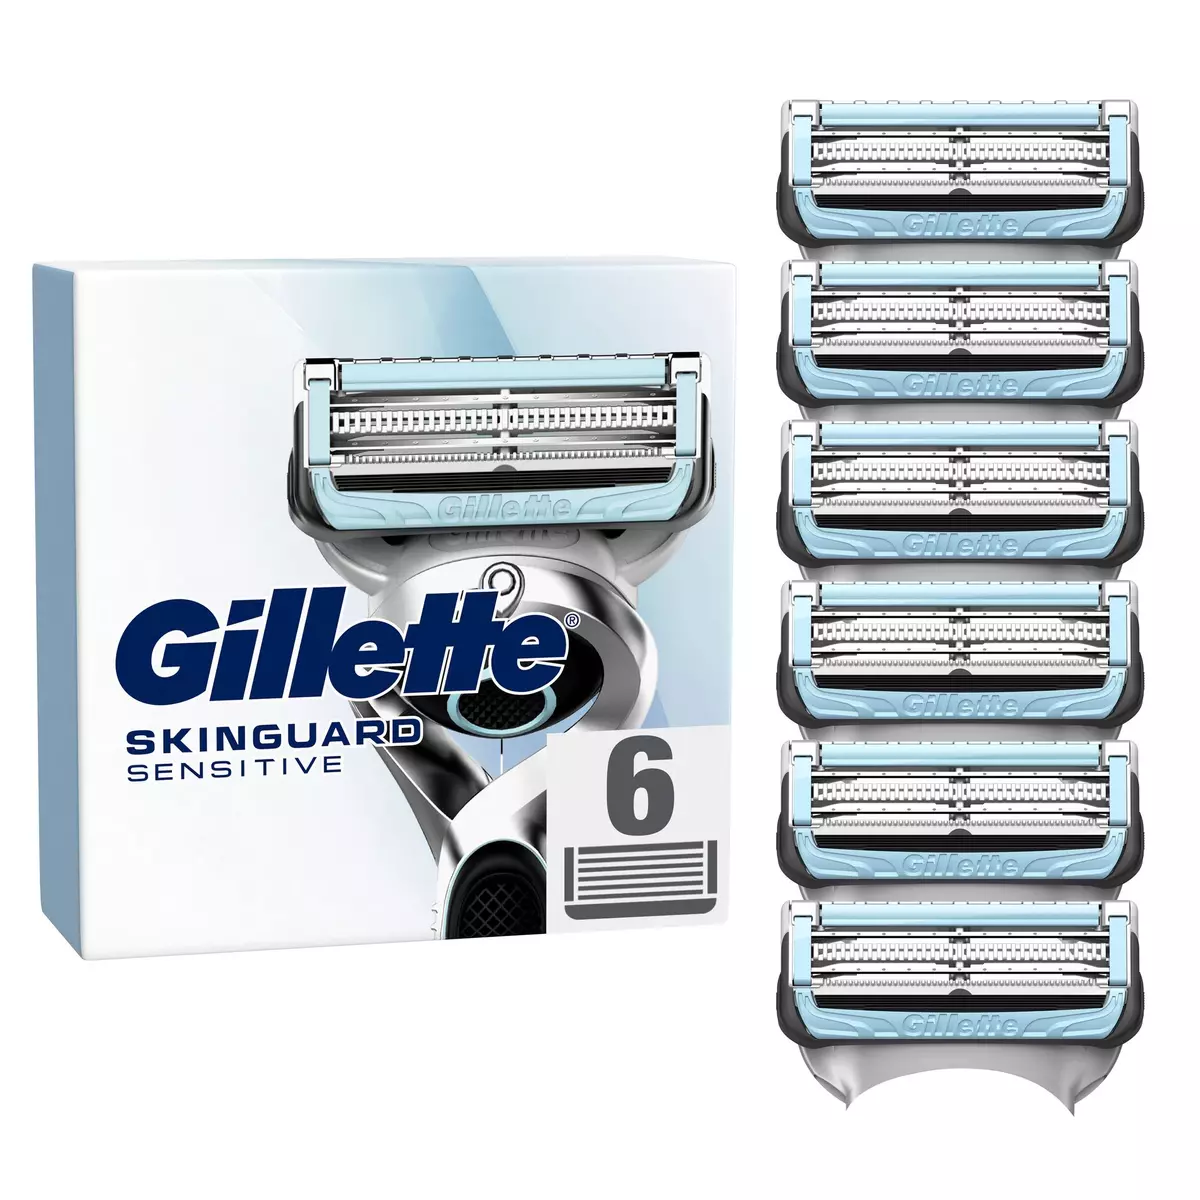 GILLETTE Skinguard sensitive recharge lames de rasoir 6 recharges